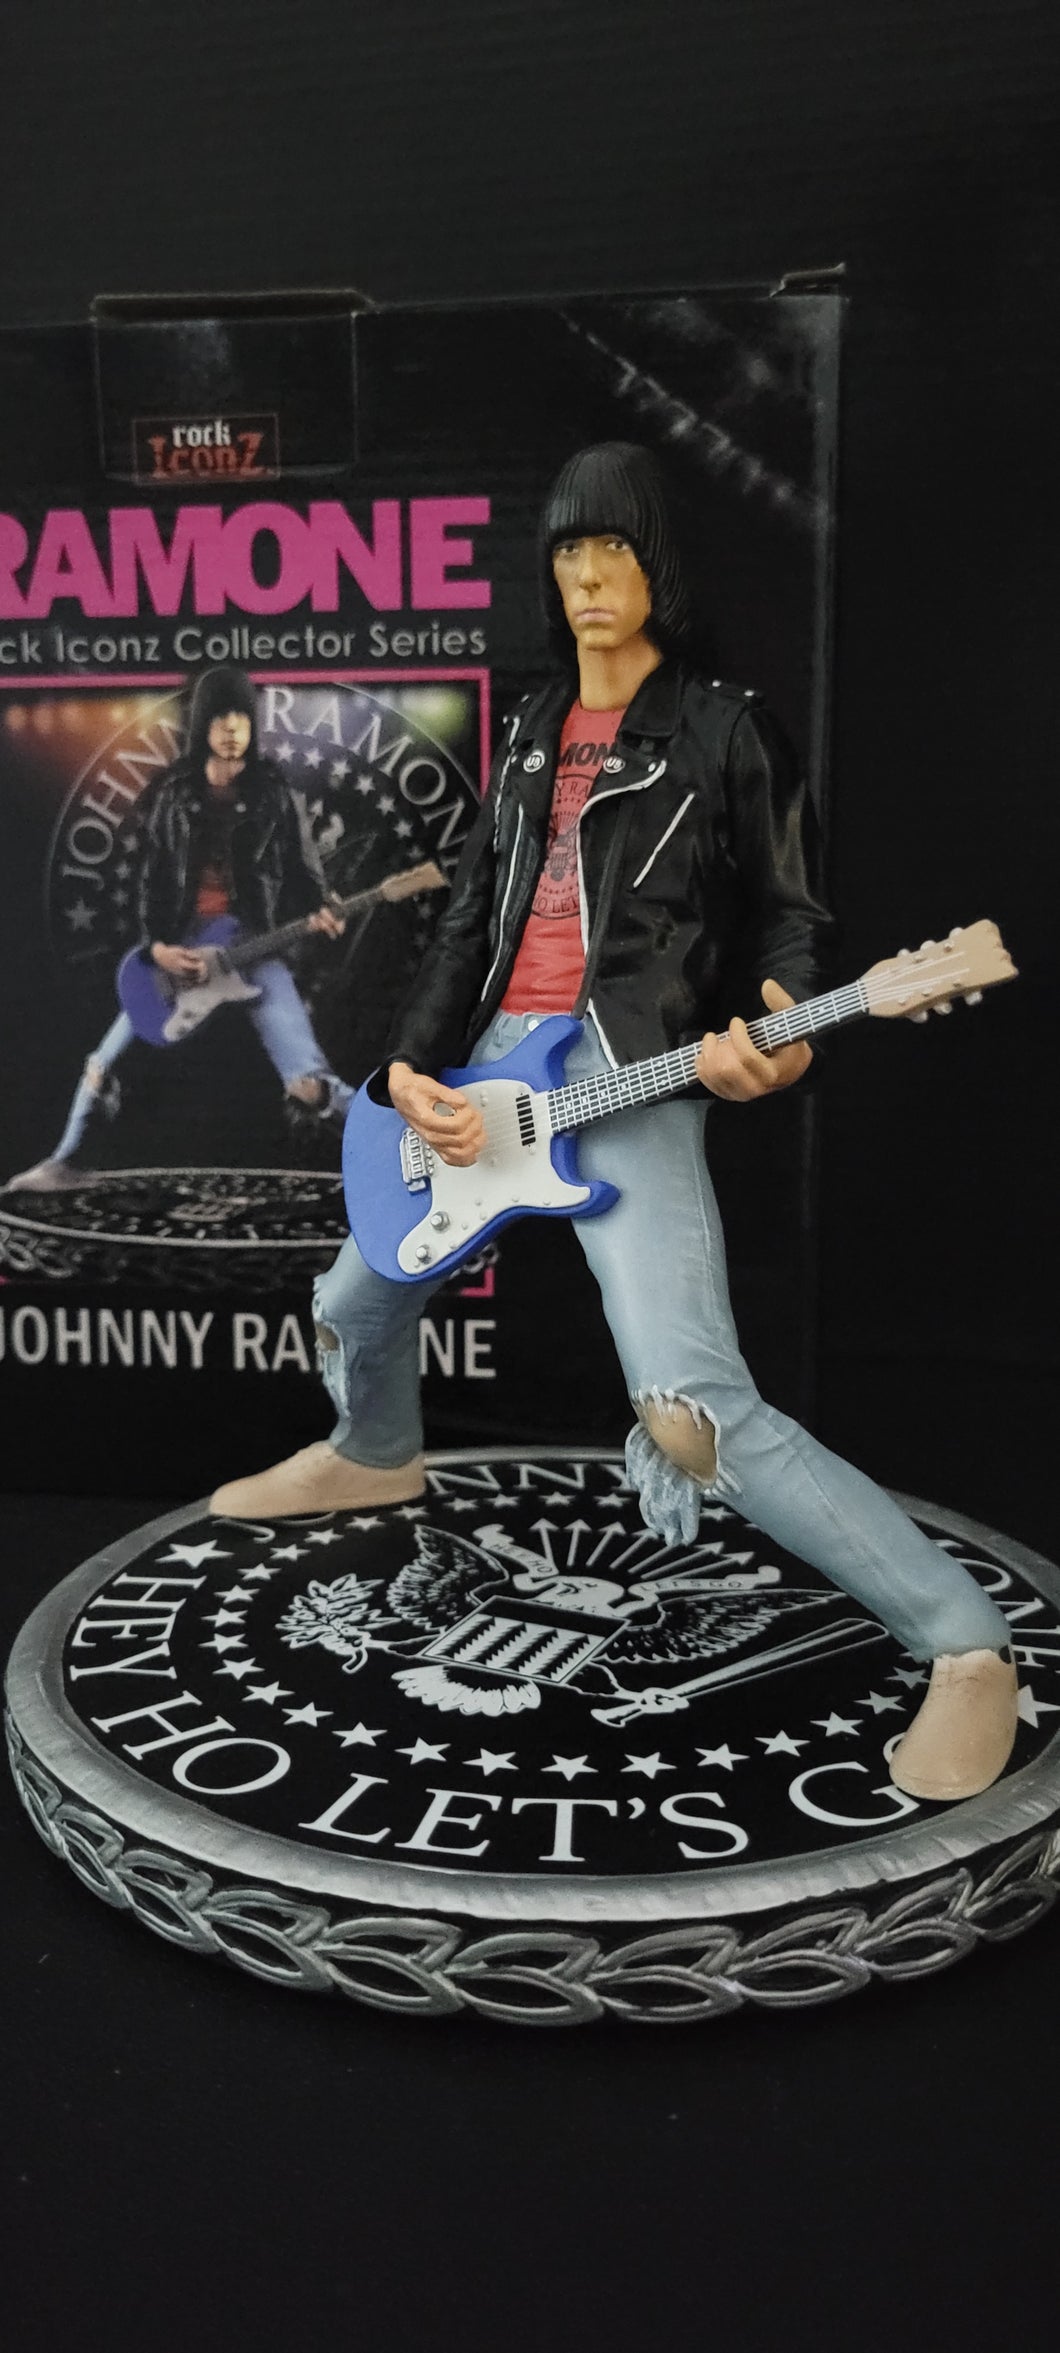 Johnny Ramone 2018 Knucklebonz Rock Iconz